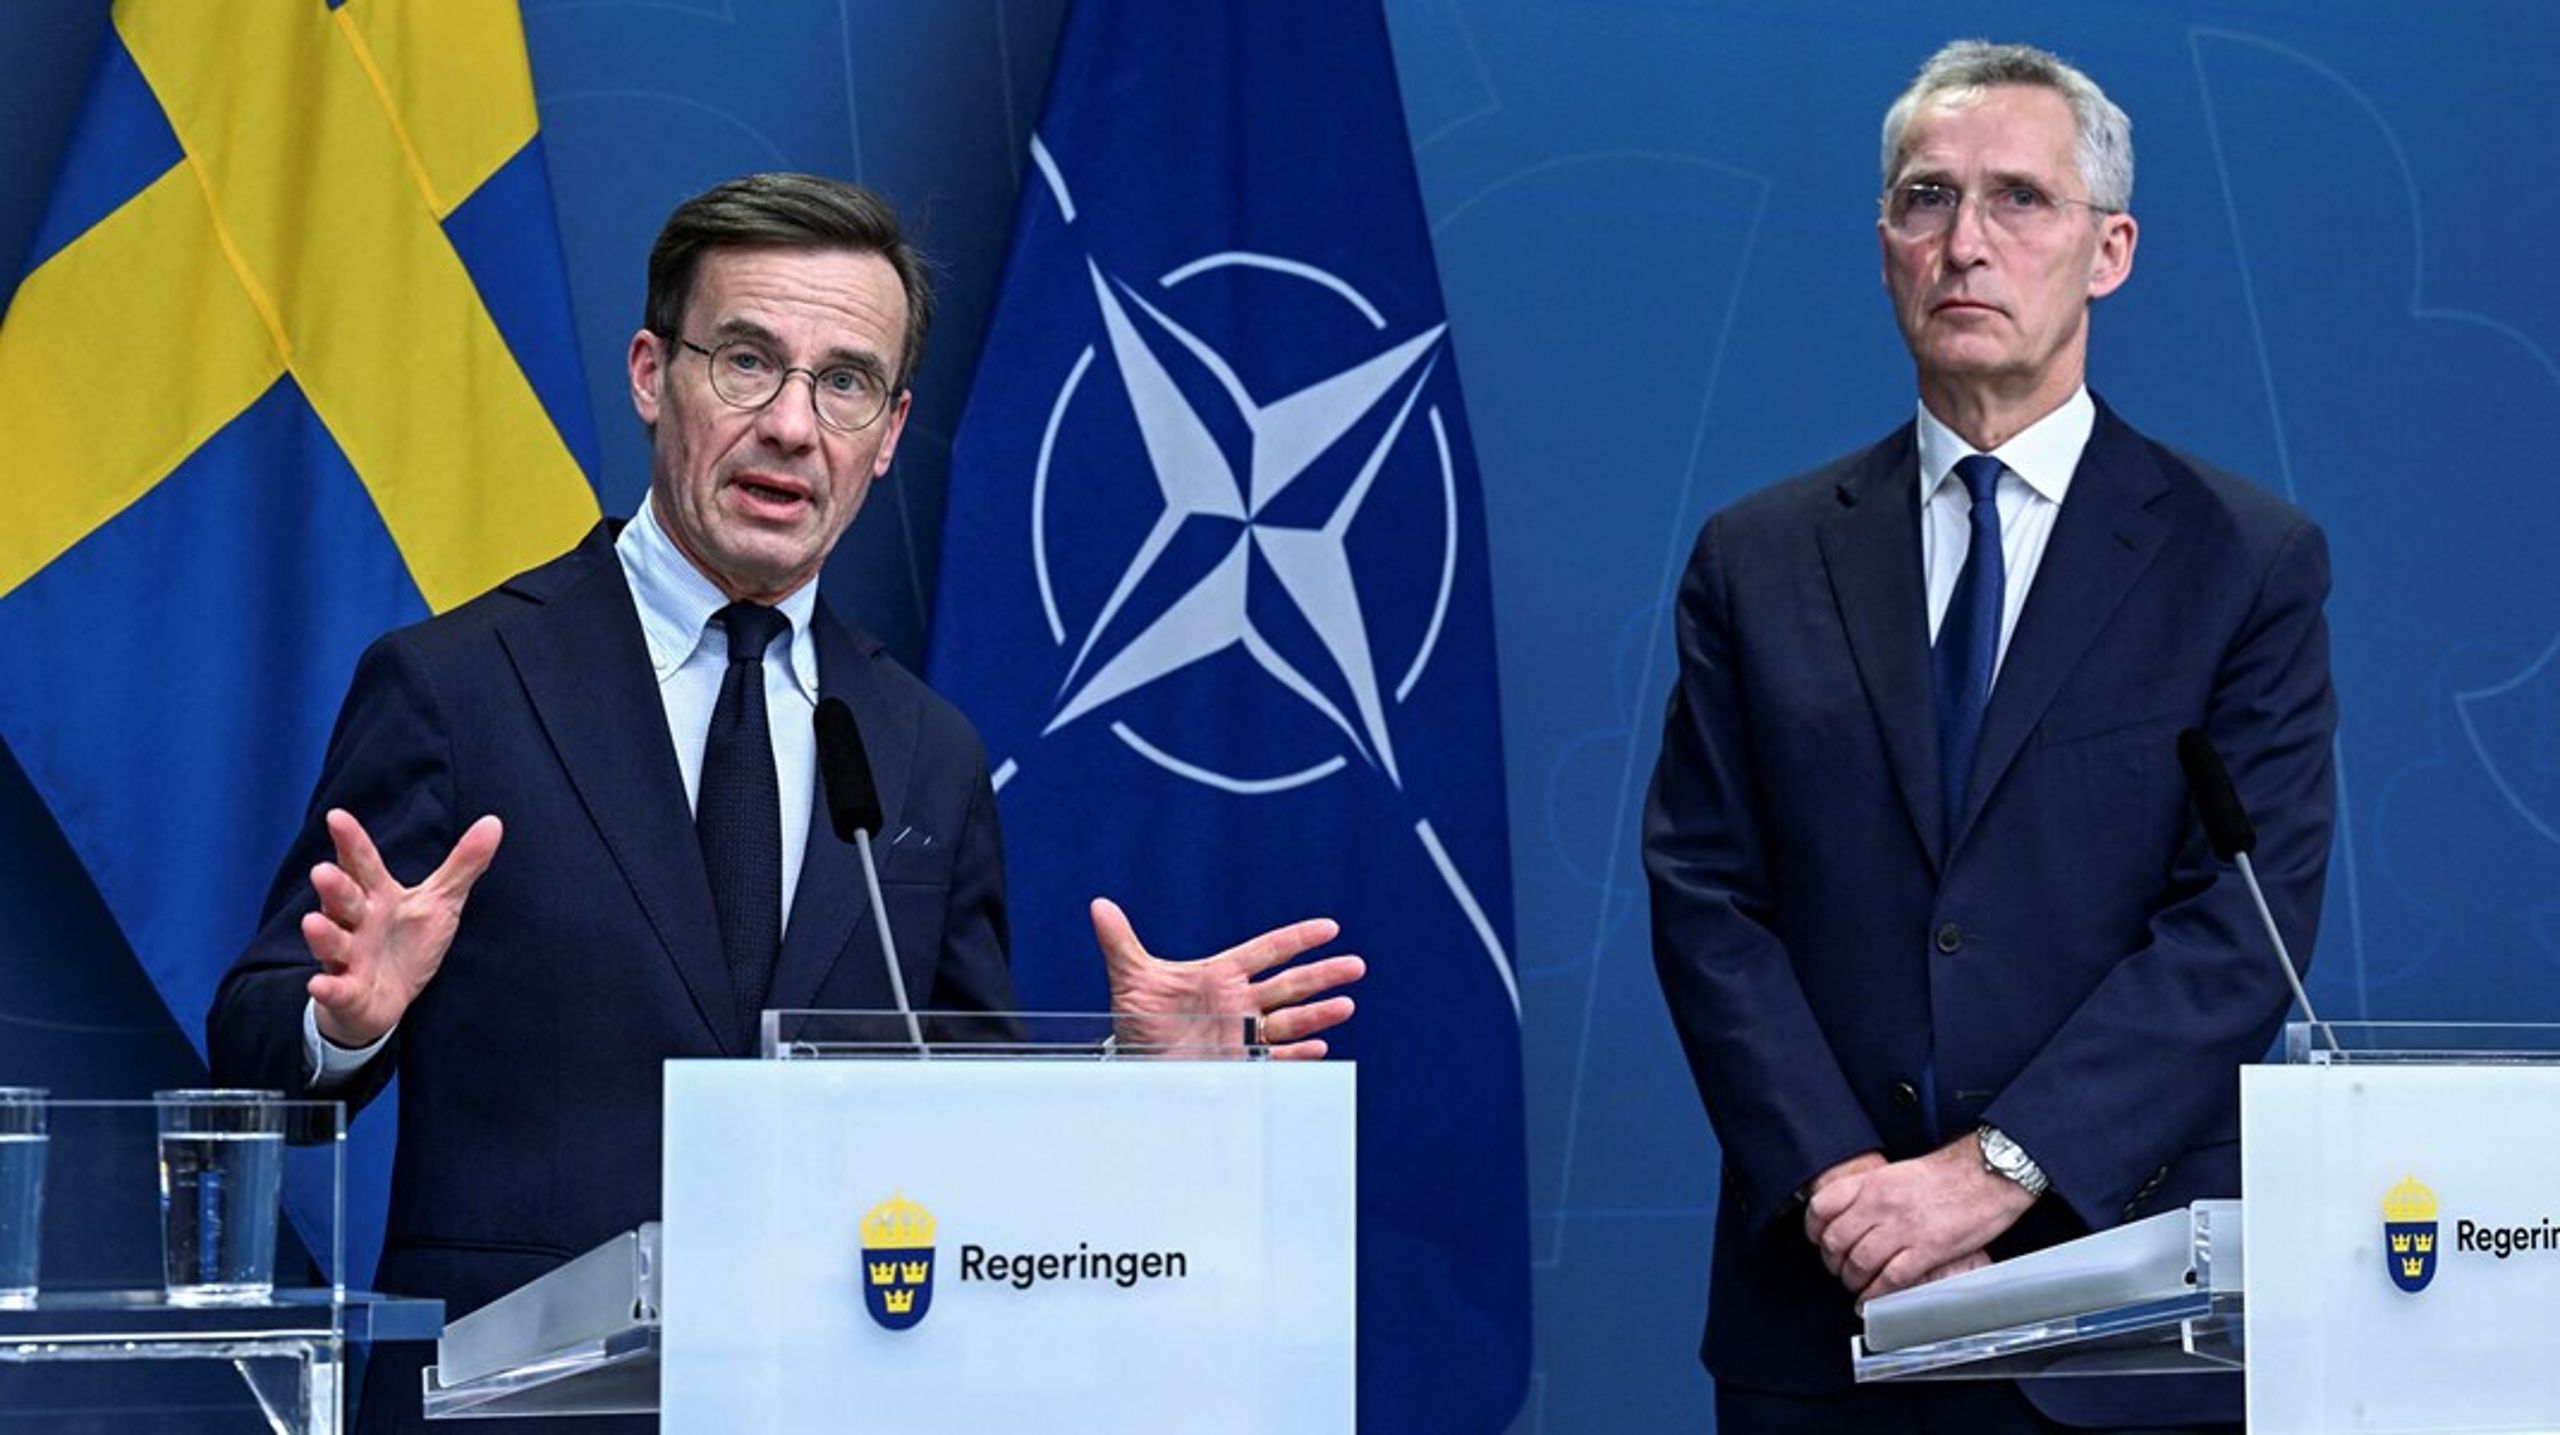 Sveriges statsminister Ulf Kristersson (t.v.) og Natos generalsekretær Jens Stoltenberg (t.h.) ved et pressemøde den 7. marts 2023.